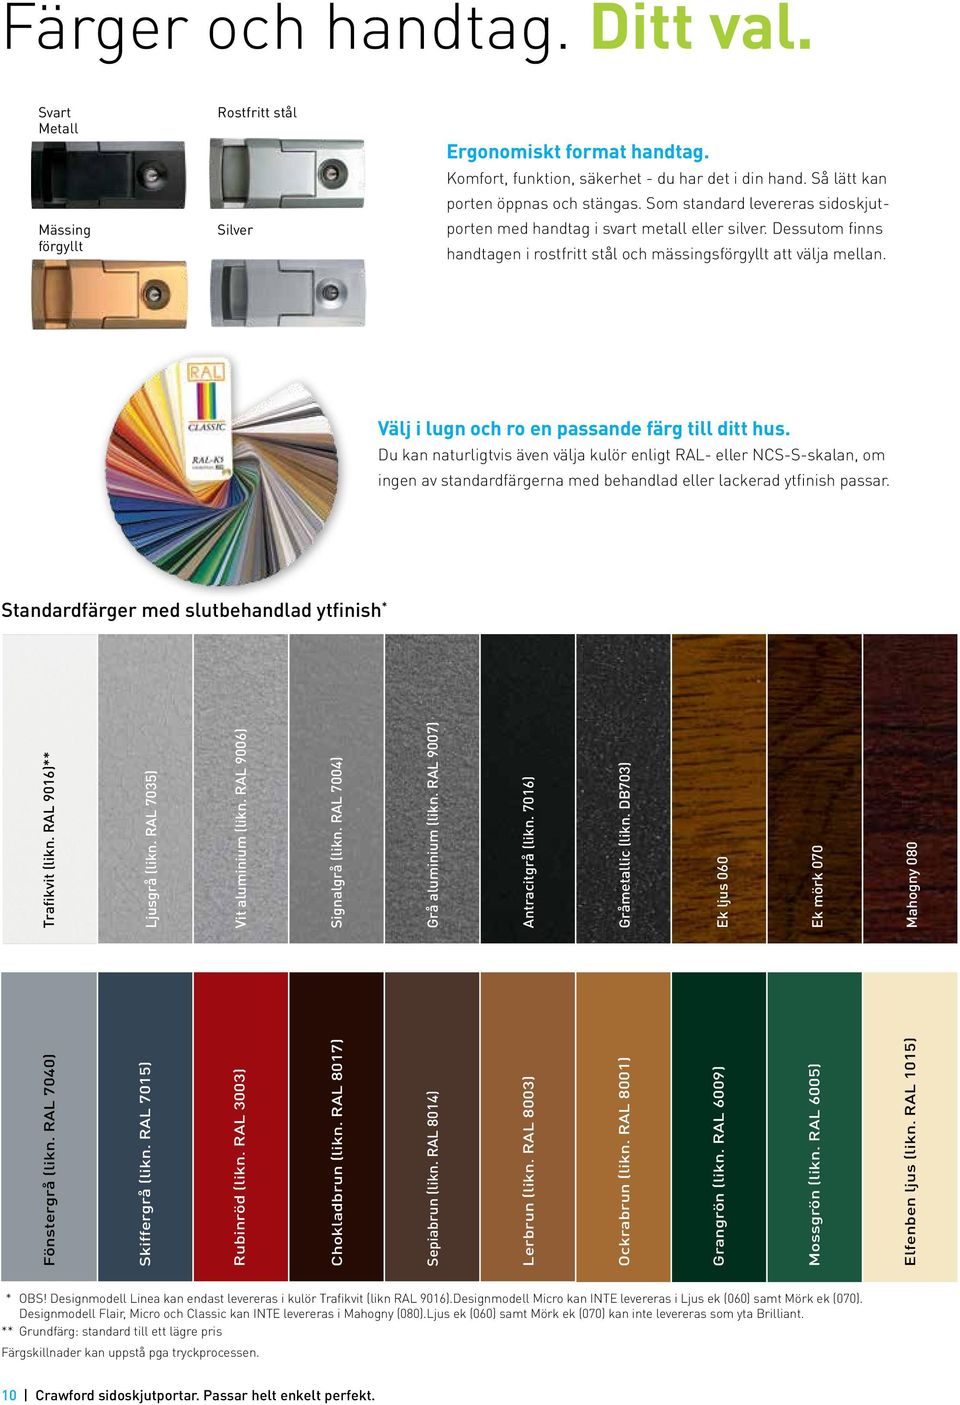 Välj i lugn och ro en passande färg till ditt hus. Du kan naturligtvis även välja kulör enligt RAL- eller NCS-S-skalan, om ingen av standardfärgerna med behandlad eller lackerad ytfinish passar.